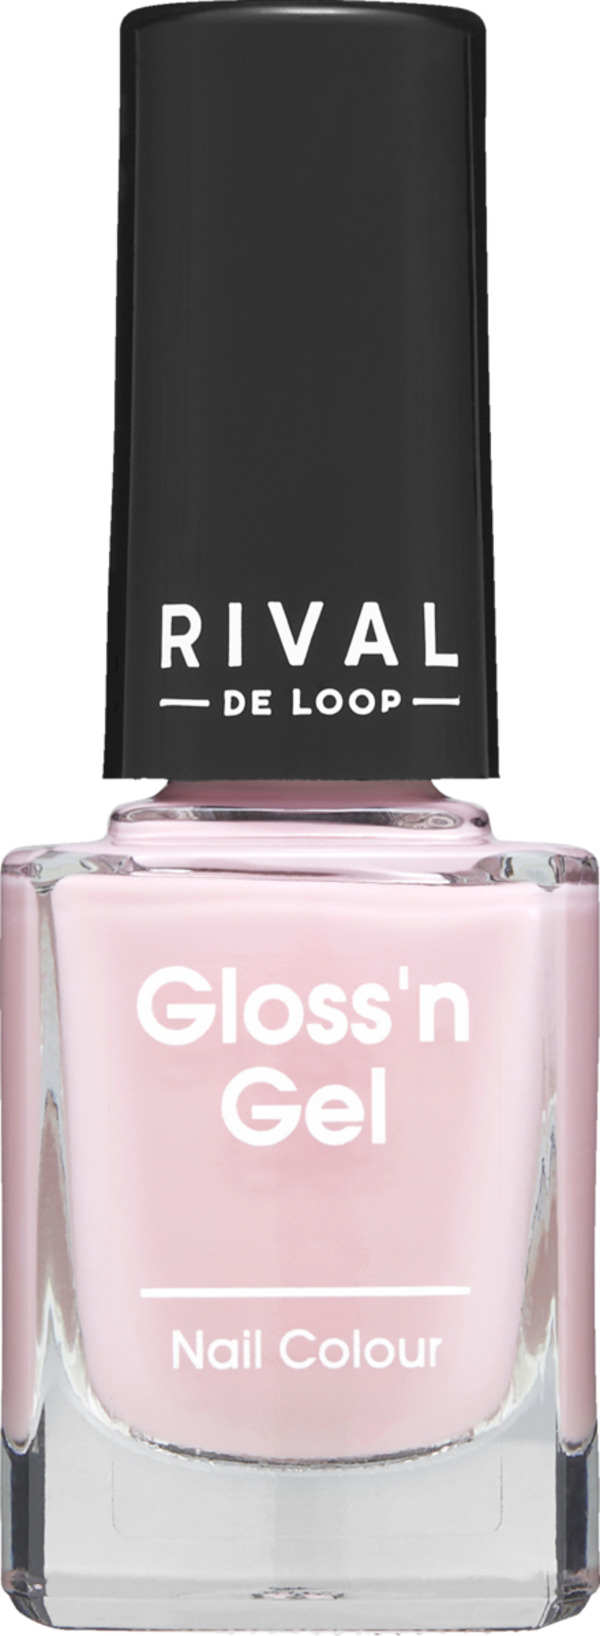 Bild 1 von RIVAL DE LOOP Rival Gloss'n Gel Nail Colour 04